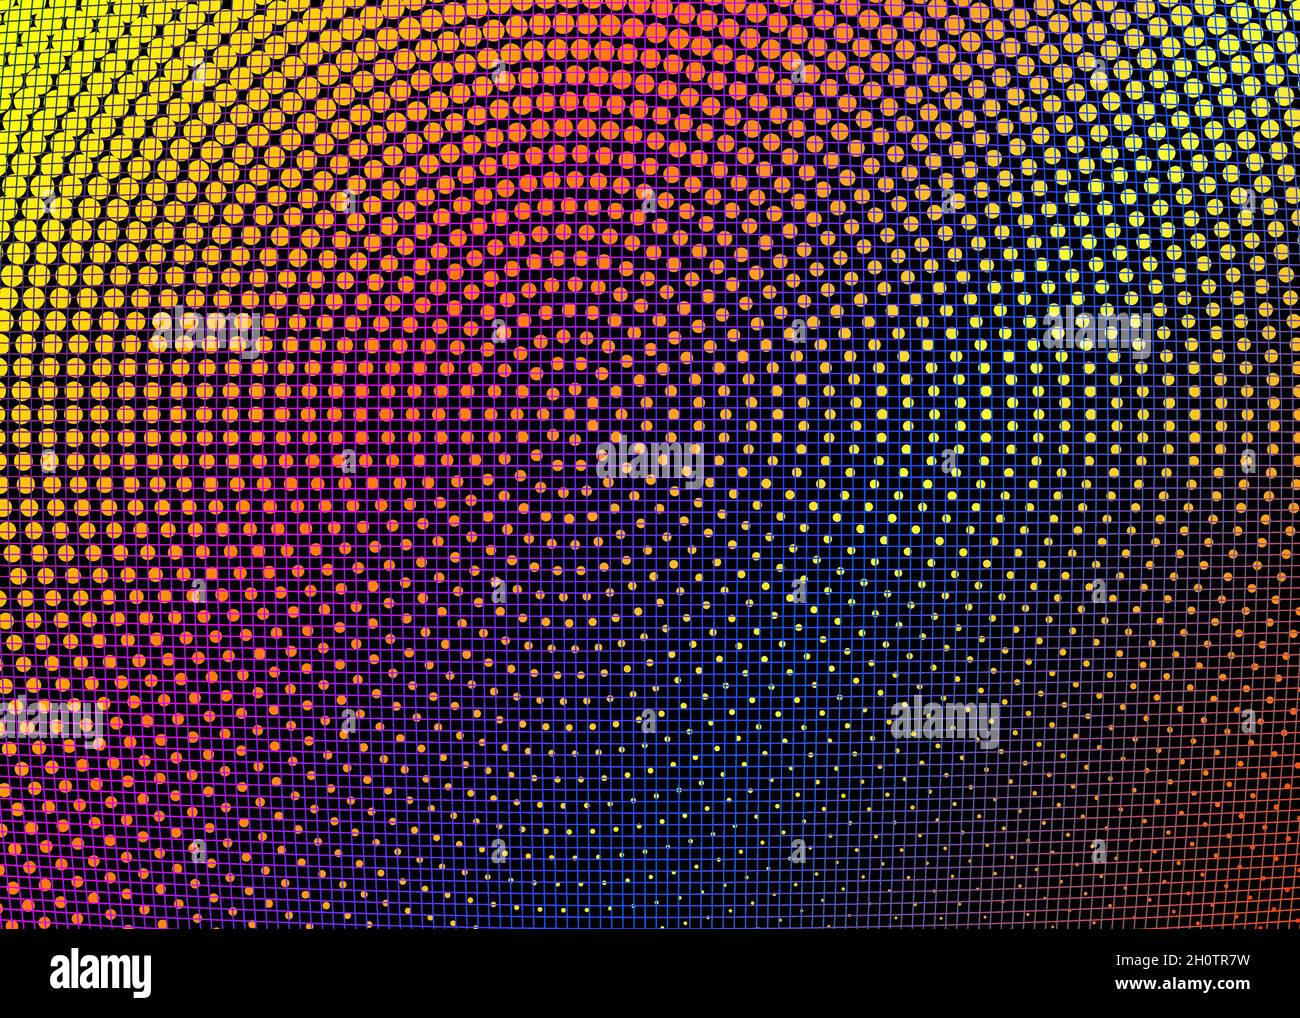 Modèle de texture en pointillés.Lumière grille multicolore, vecteur arc-en-ciel cercle géométrique moderne.Motif géométrique en demi-ton avec couleur de dégradé Illustration de Vecteur